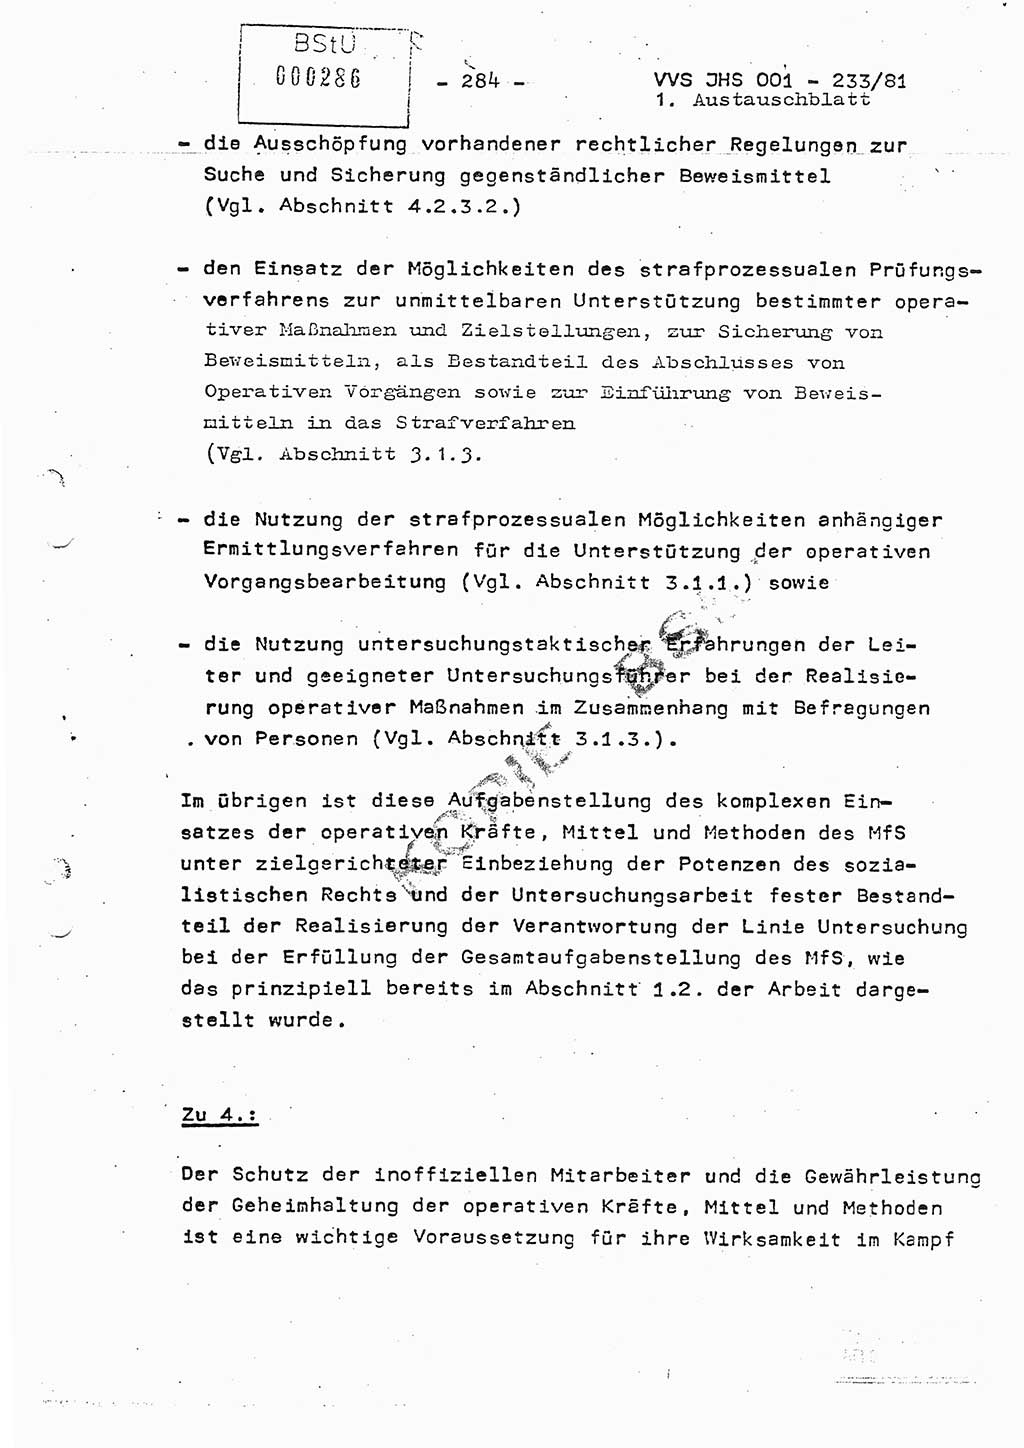 Dissertation Oberstleutnant Horst Zank (JHS), Oberstleutnant Dr. Karl-Heinz Knoblauch (JHS), Oberstleutnant Gustav-Adolf Kowalewski (HA Ⅸ), Oberstleutnant Wolfgang Plötner (HA Ⅸ), Ministerium für Staatssicherheit (MfS) [Deutsche Demokratische Republik (DDR)], Juristische Hochschule (JHS), Vertrauliche Verschlußsache (VVS) o001-233/81, Potsdam 1981, Blatt 284 (Diss. MfS DDR JHS VVS o001-233/81 1981, Bl. 284)